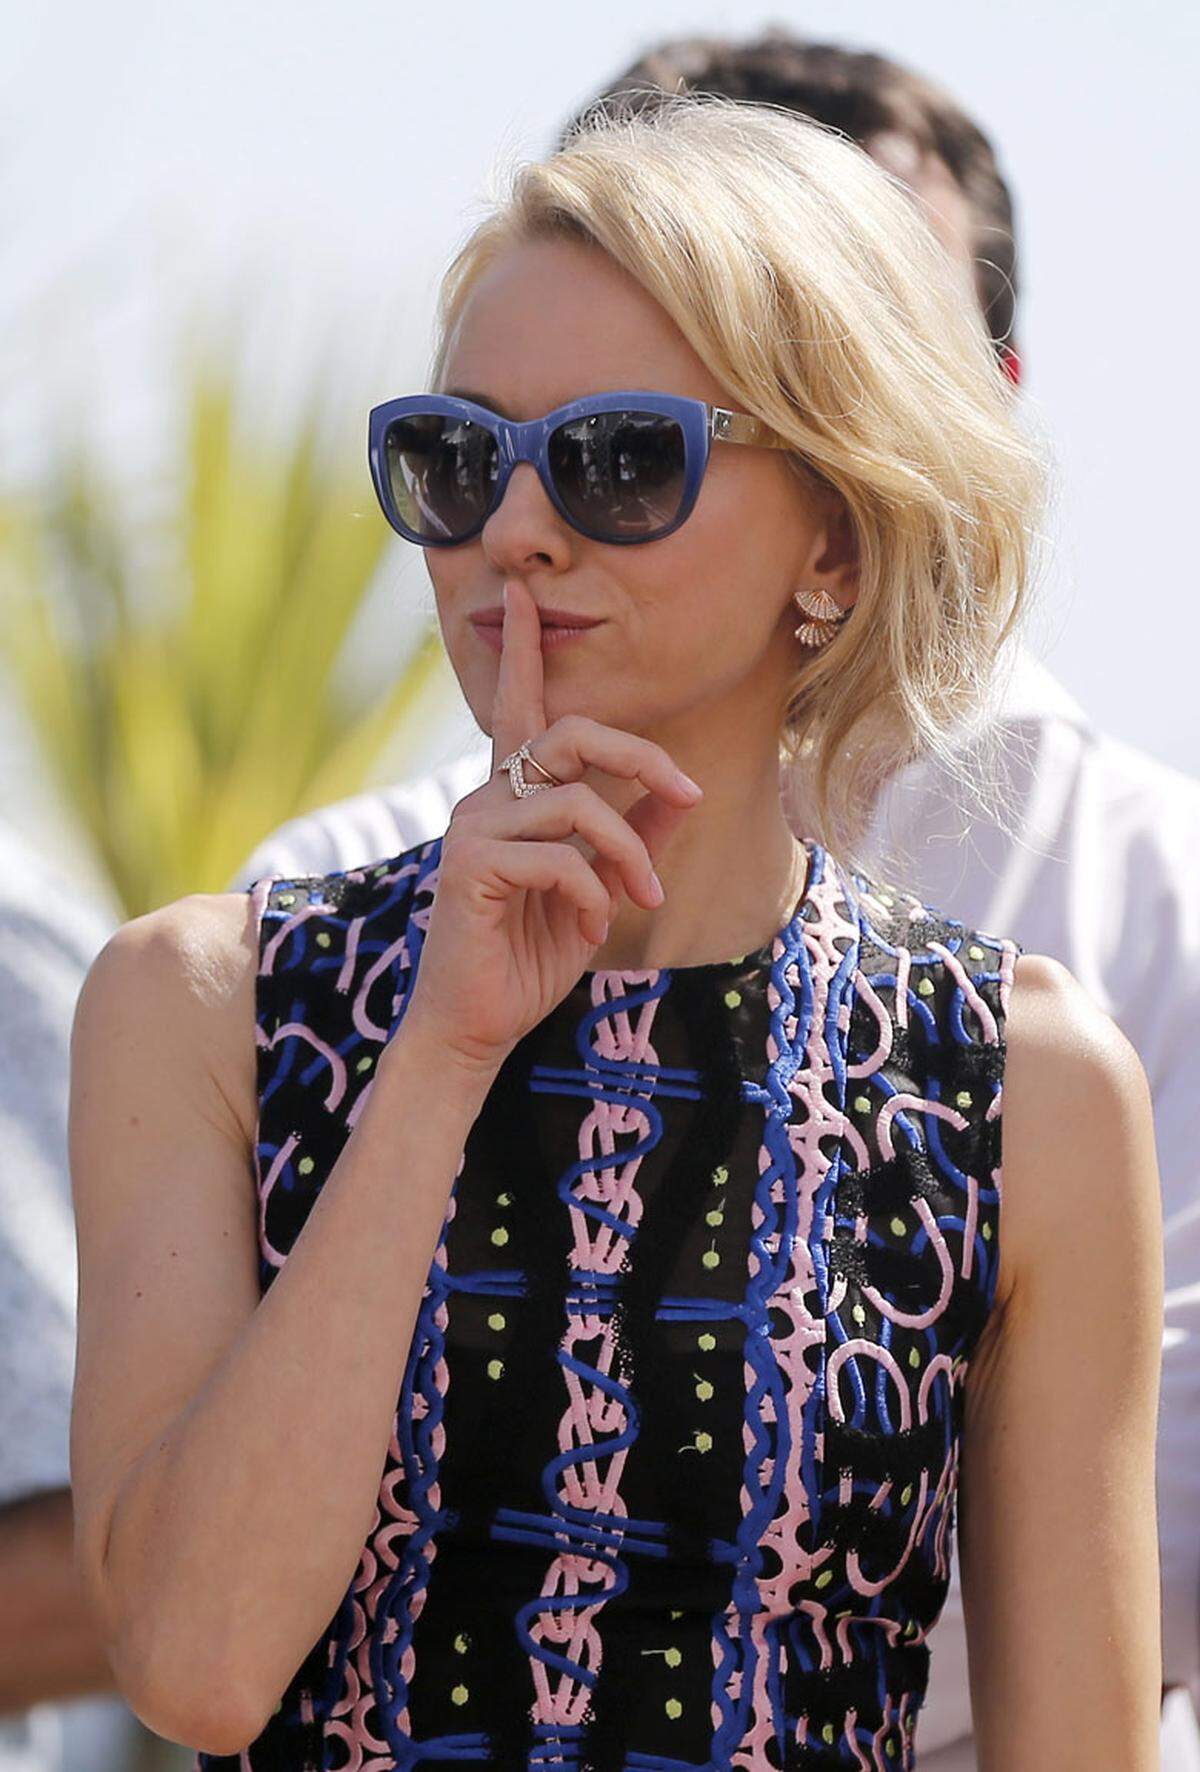 Kollegin Naomi Watts stimmt ihre Sonnenbrille farblich gerene auf ihr Outfit ab.